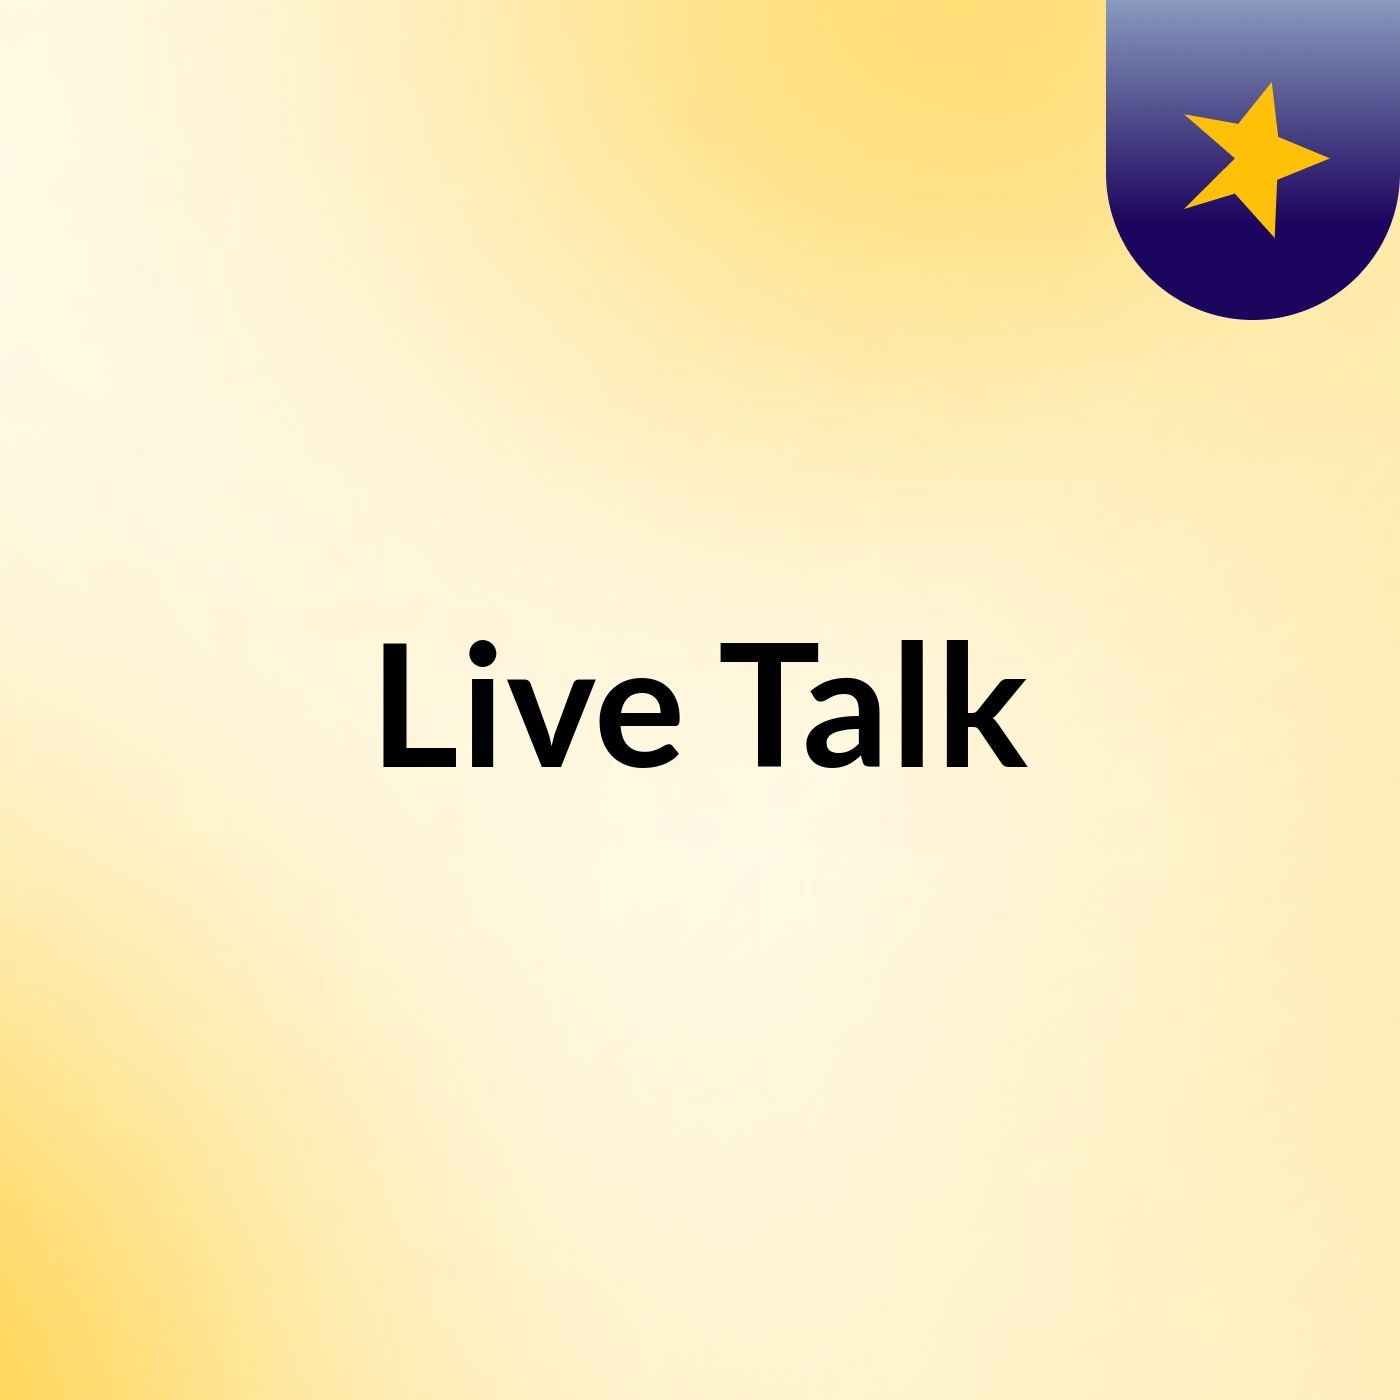 Episode 2 - Live Talk